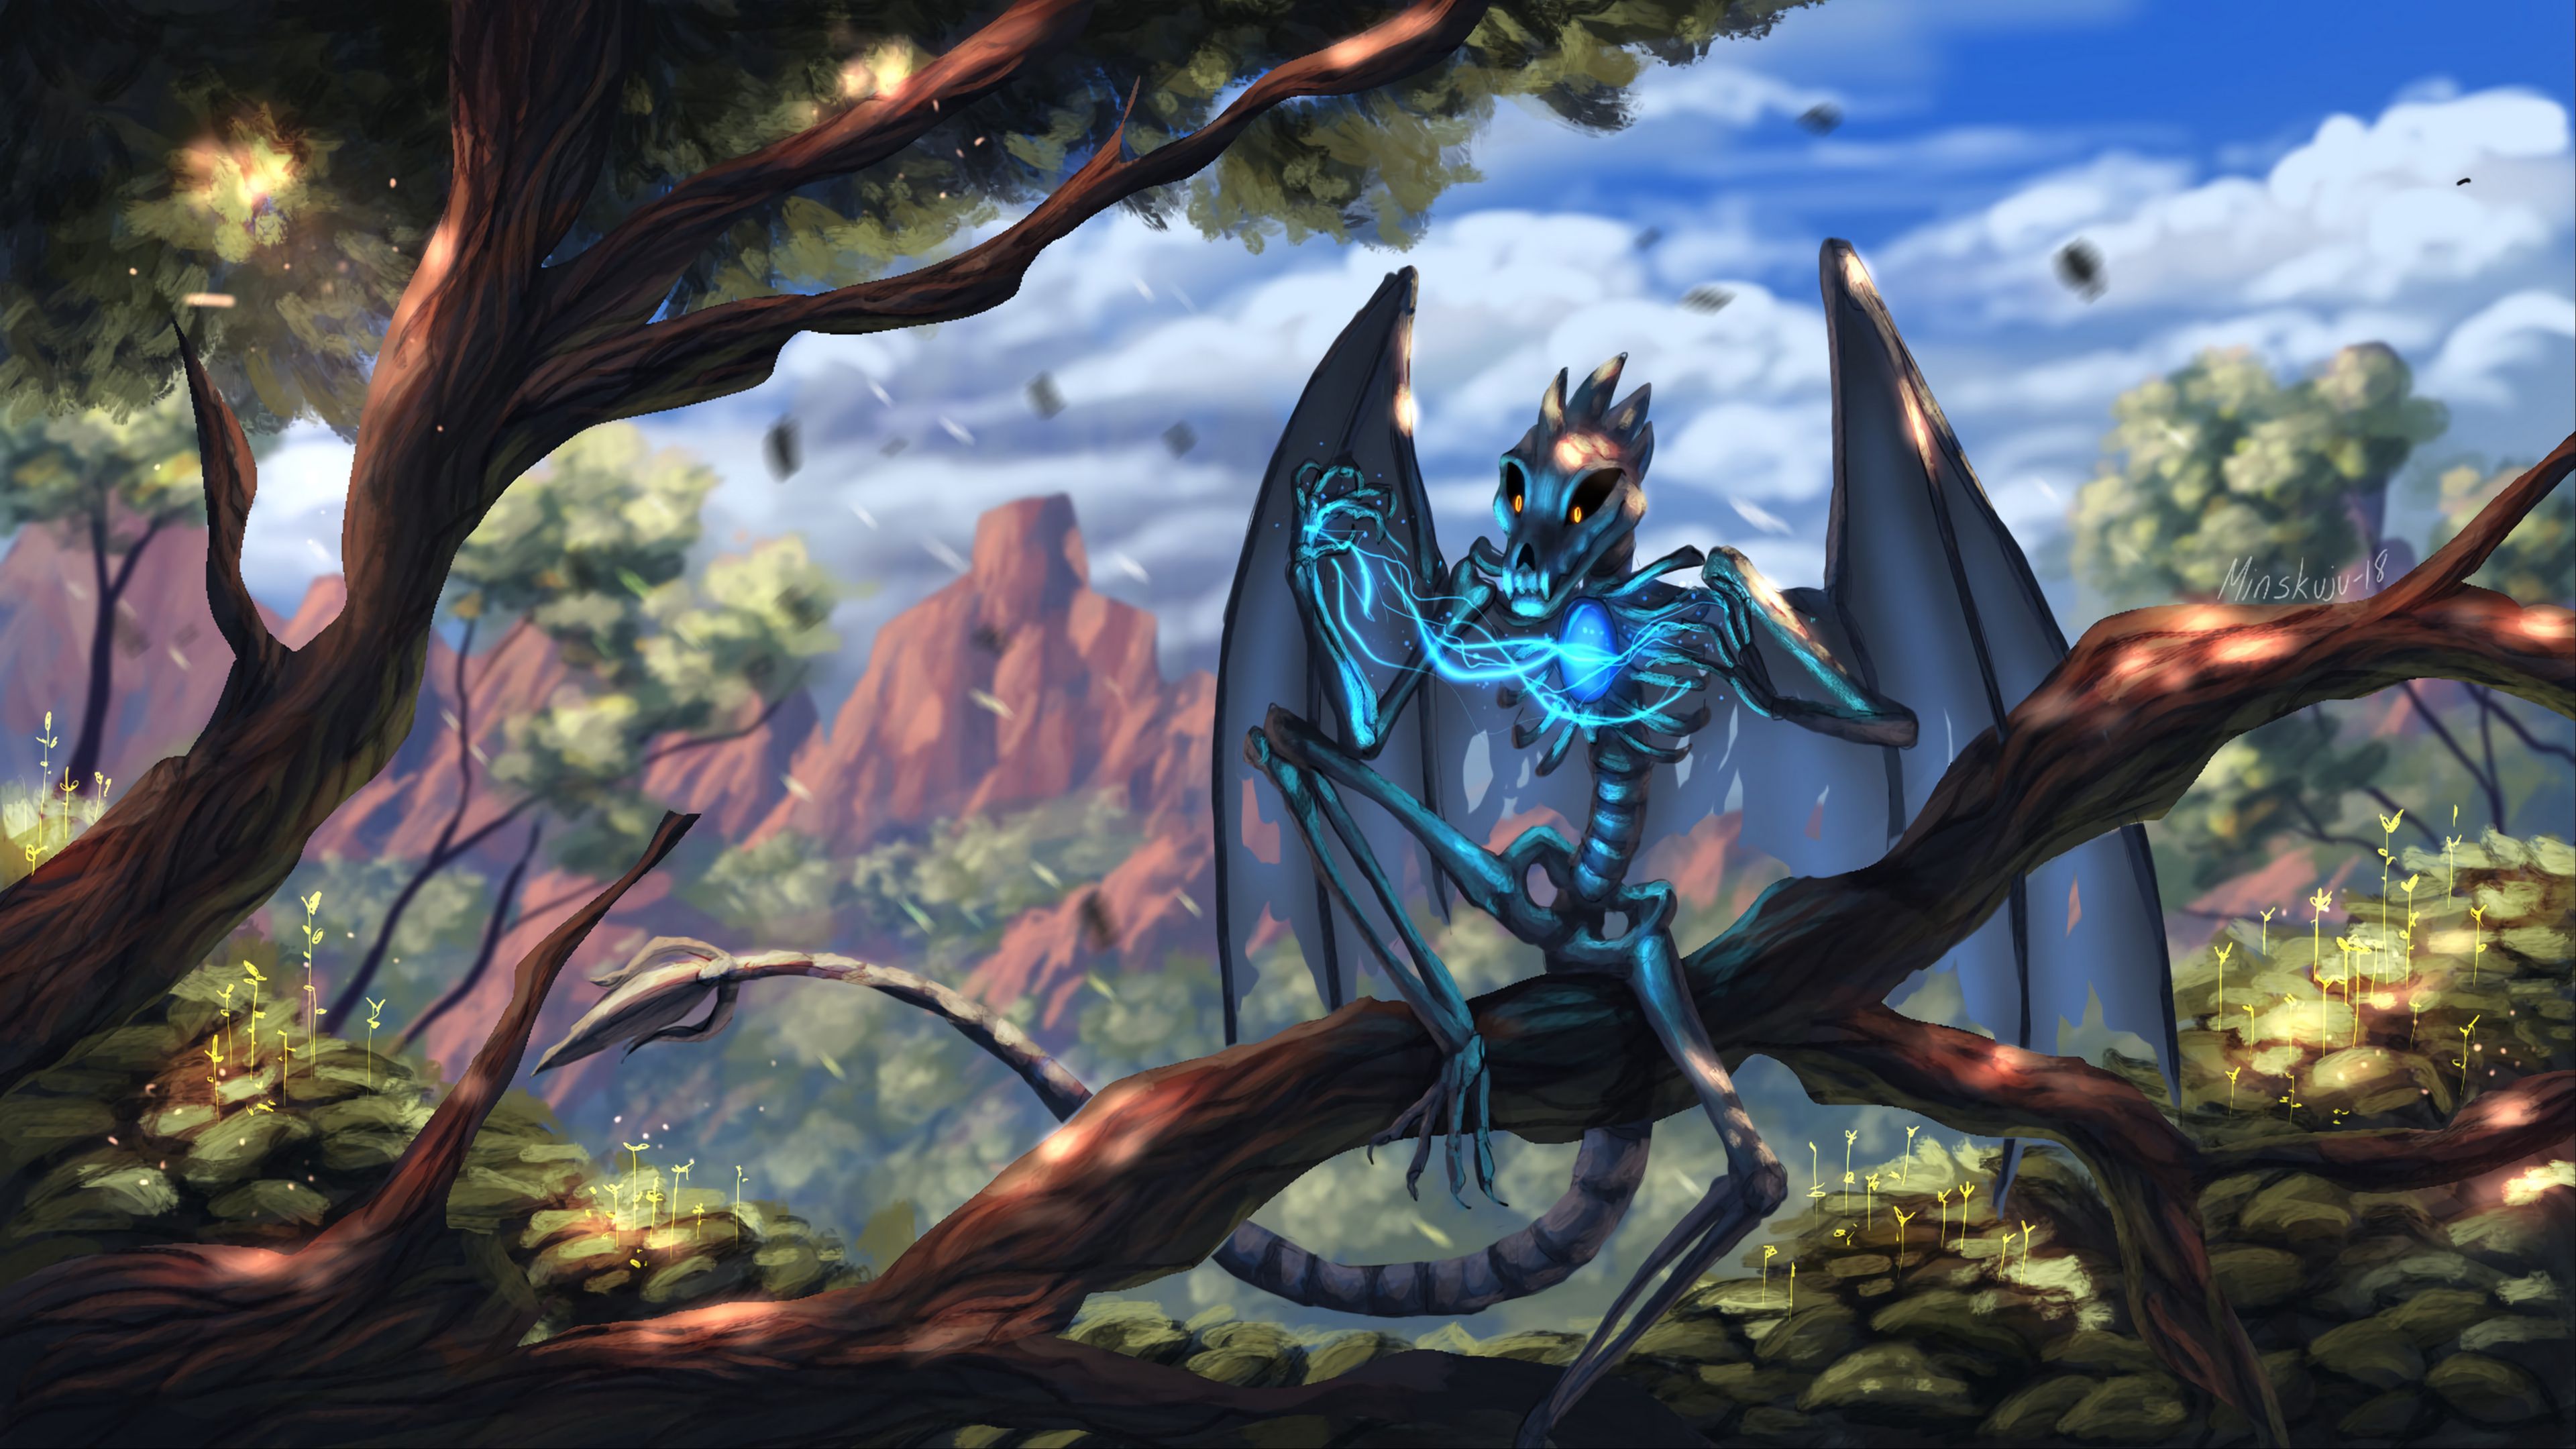 Wallpaper / dragon, skeleton, wings, creature, magical, fabulous, 4k free download